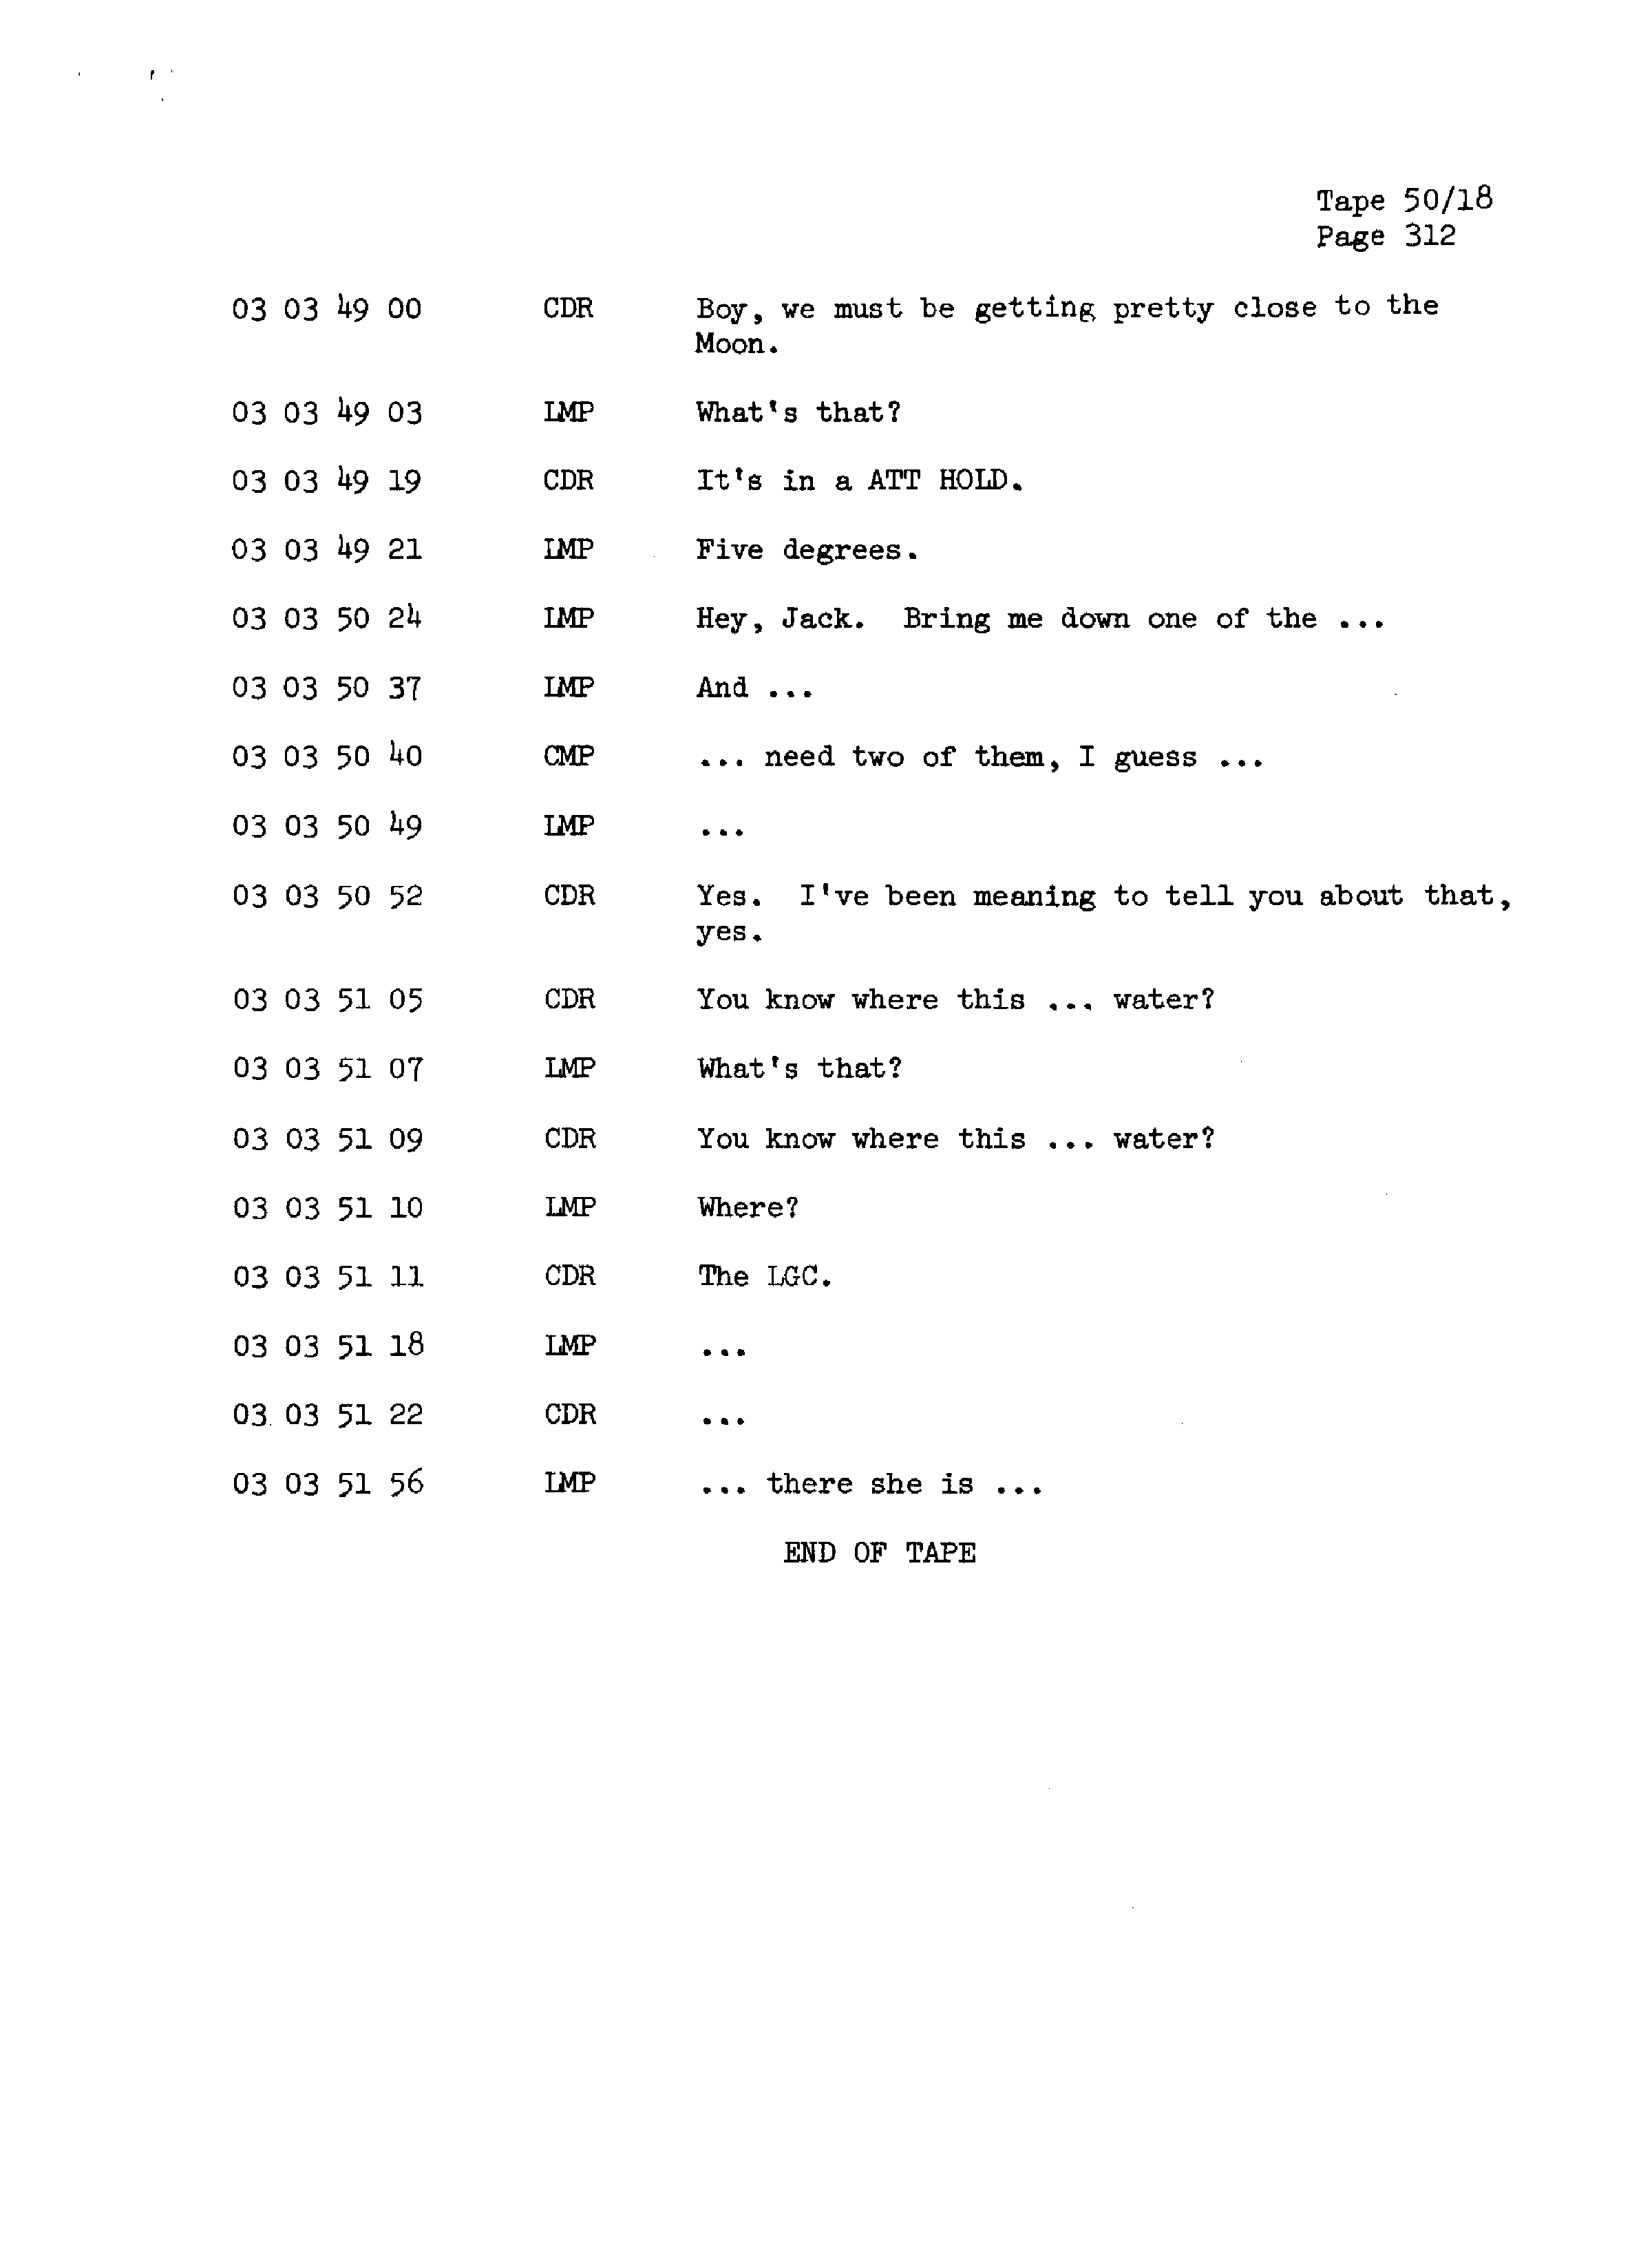 Page 319 of Apollo 13’s original transcript